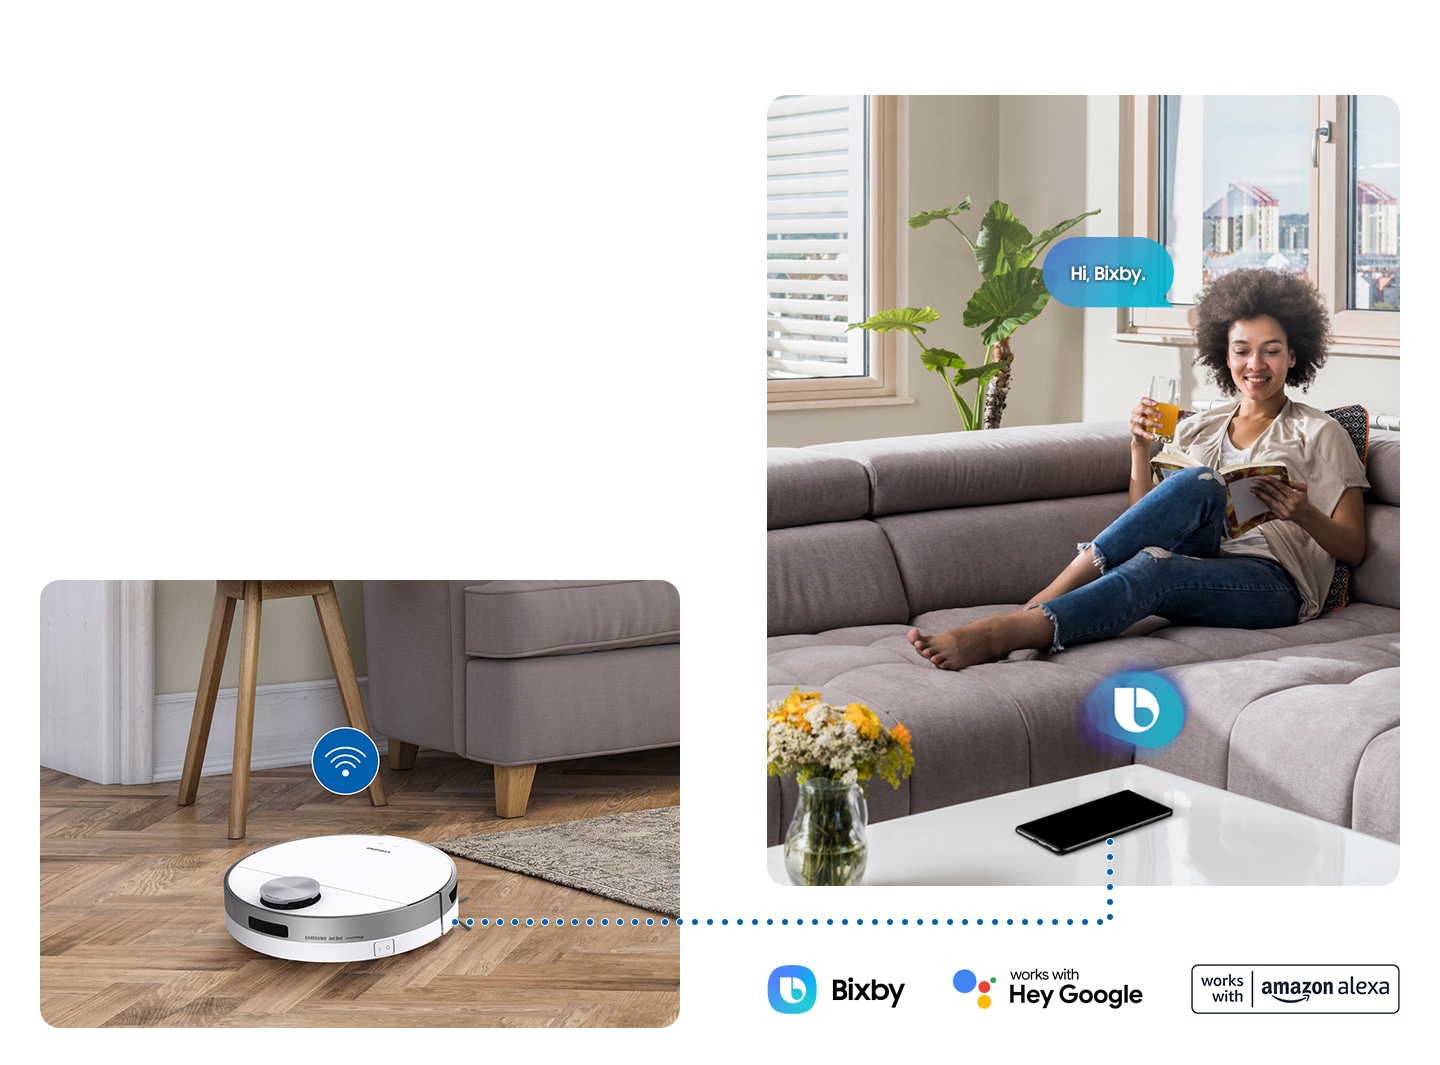 Với nhận dạng giọng nói của Bixby, người dùng có thể yêu cầu Jet Bot dọn dẹp, và thậm chí có thể hỏi thông tin hoặc kiểm tra vật nuôi của gia đình.